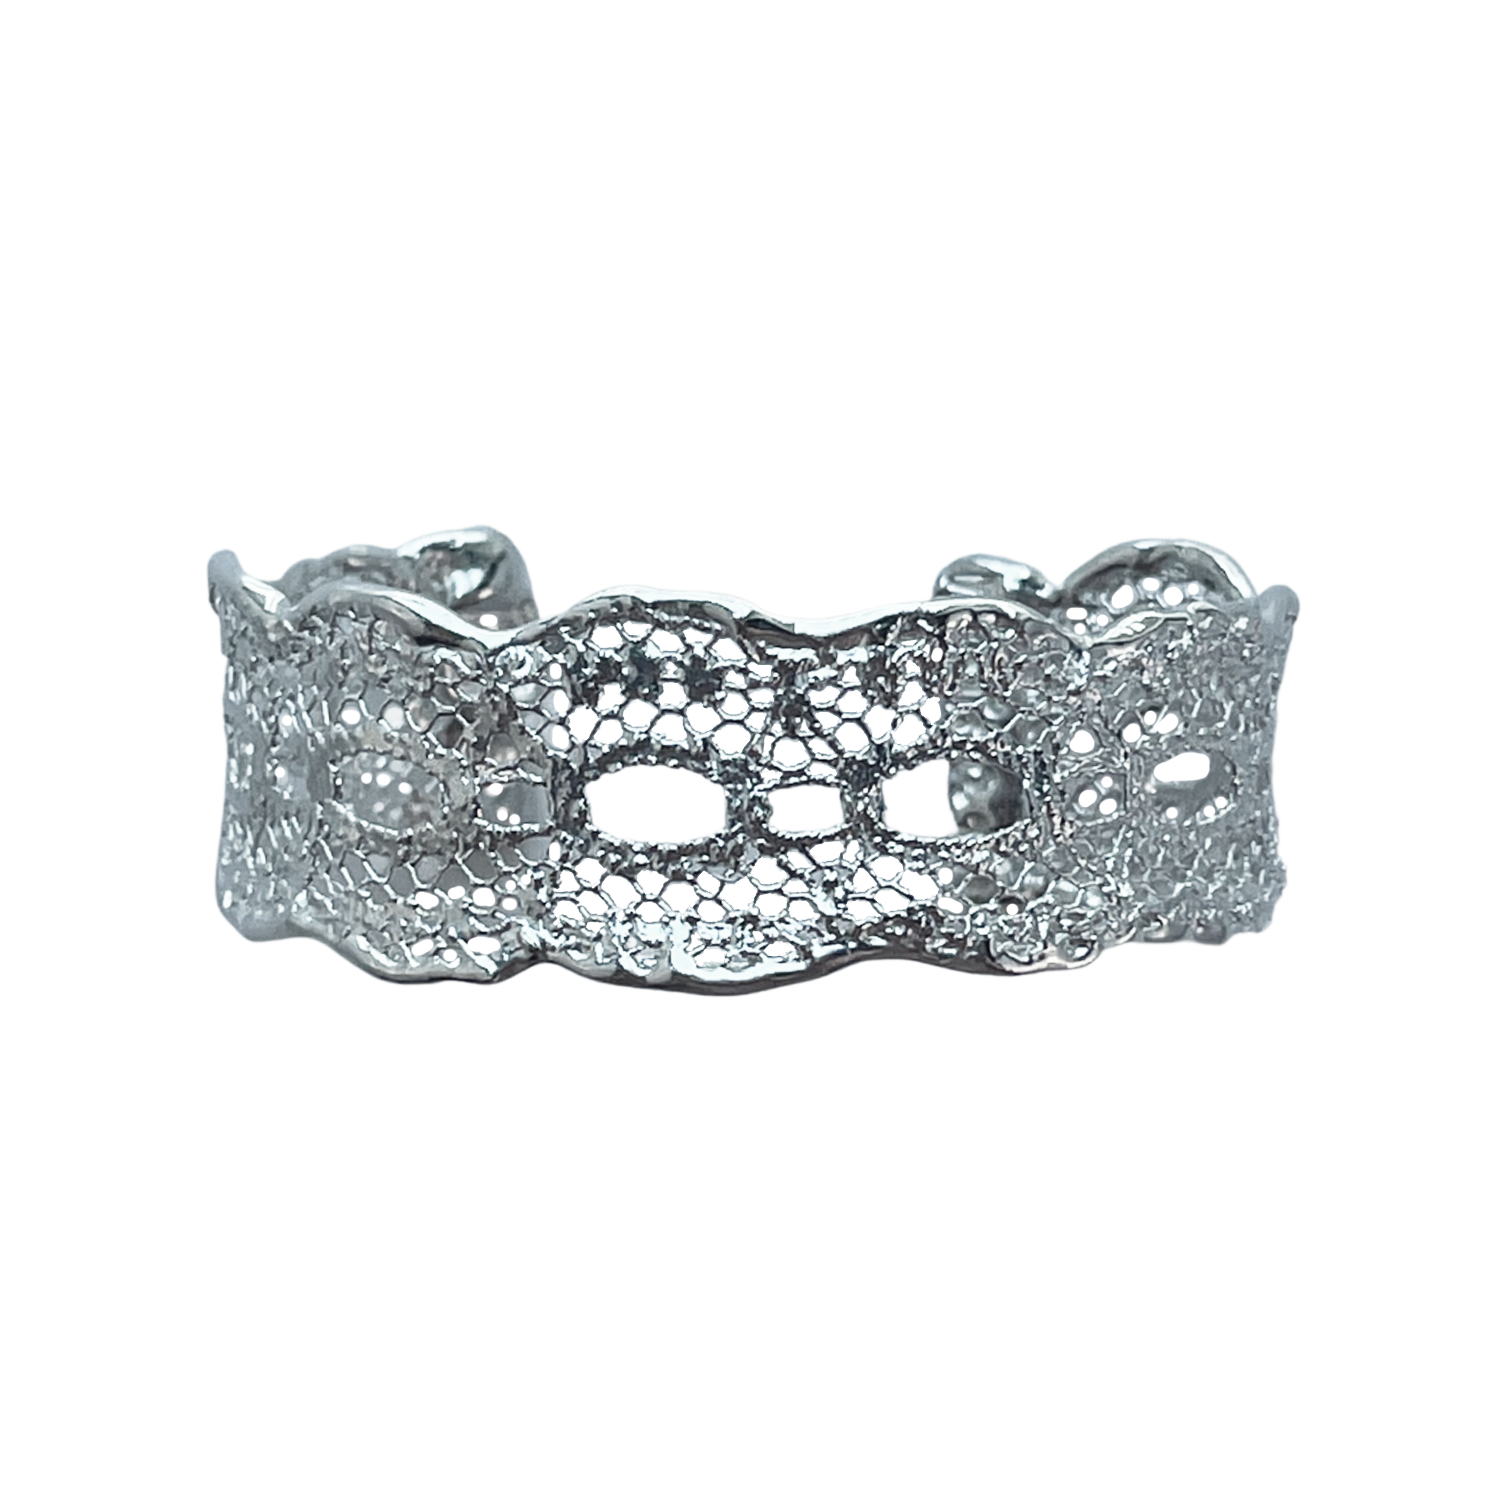 The fine Zelia lace cuff bracelet in sterling silver.